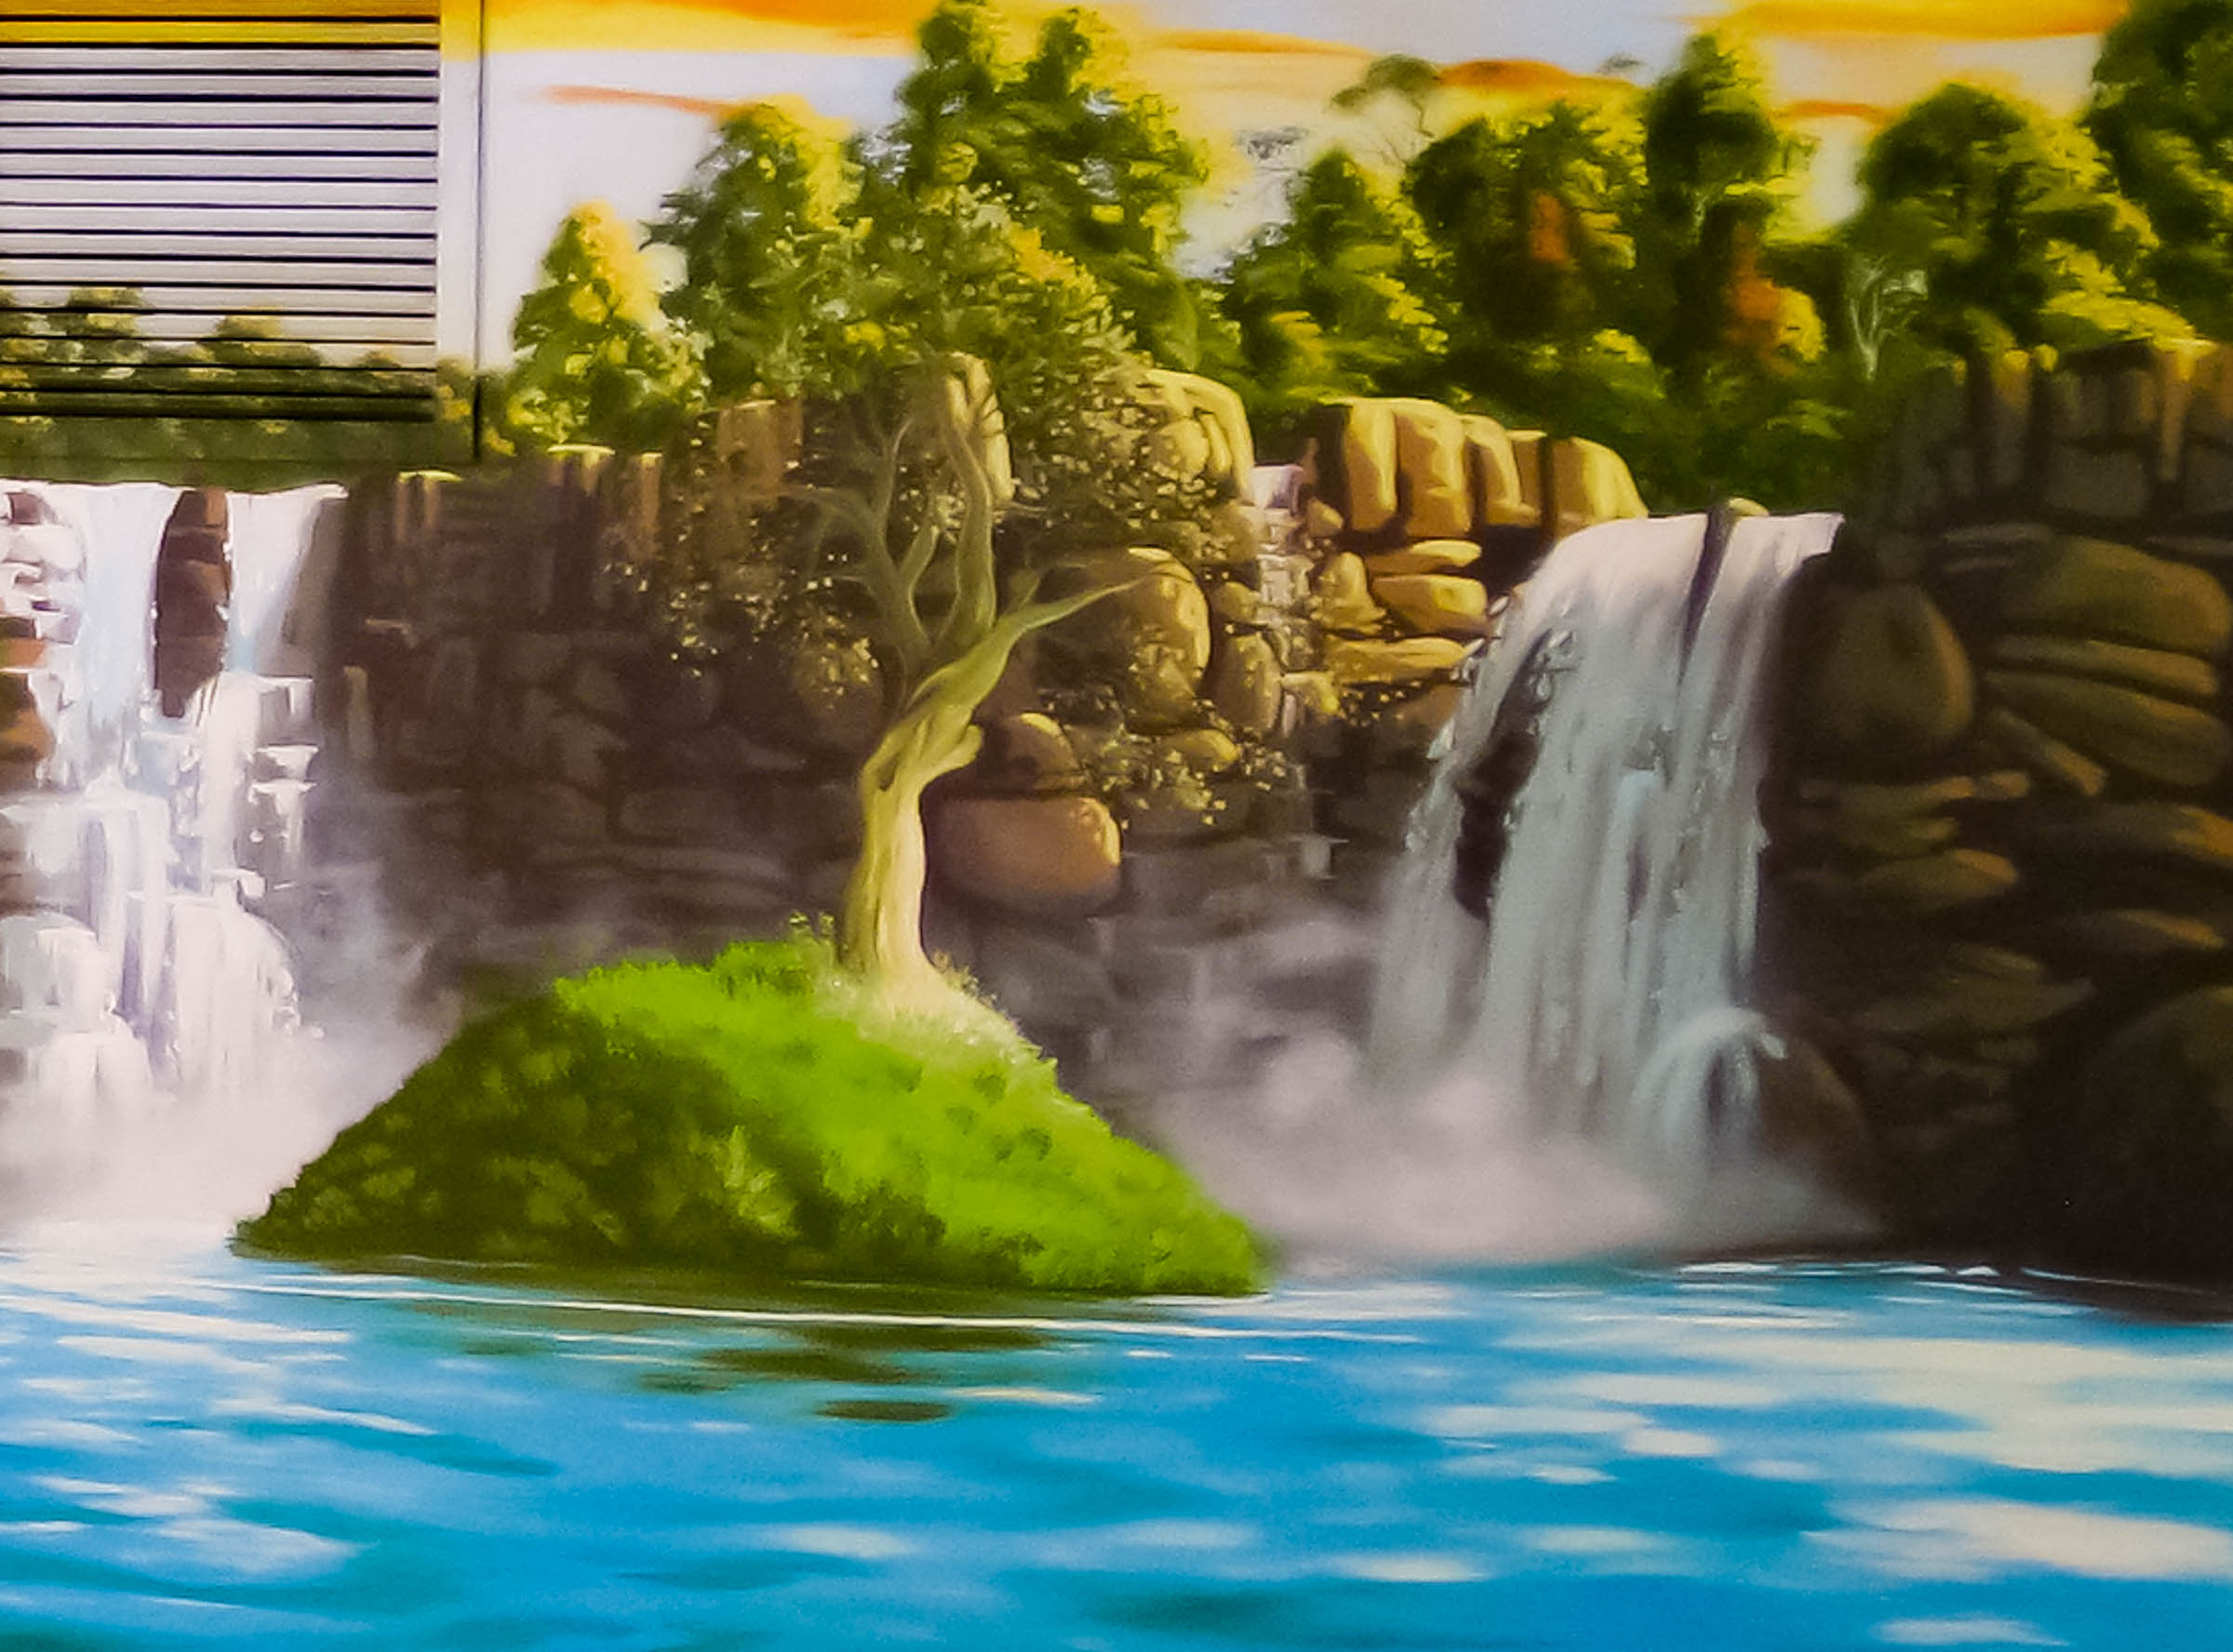 pool waterfall oasis mural